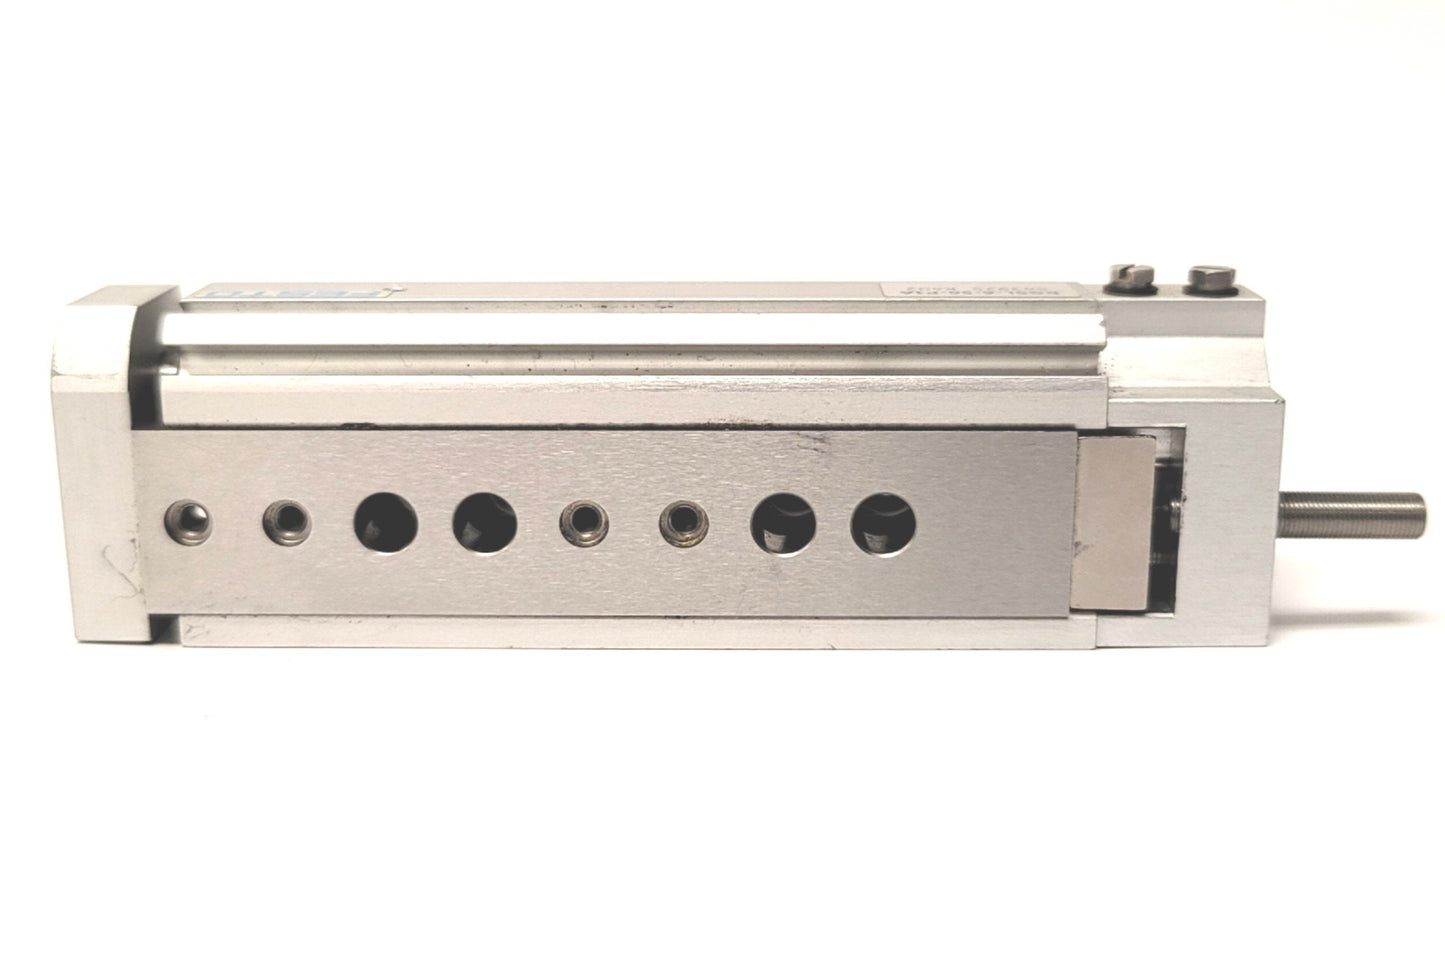 Used Festo DGSL-6-50-P1A Mini Slide Linear Actuator 8mm Bore 50mm Stroke M3 .15-.8MPa